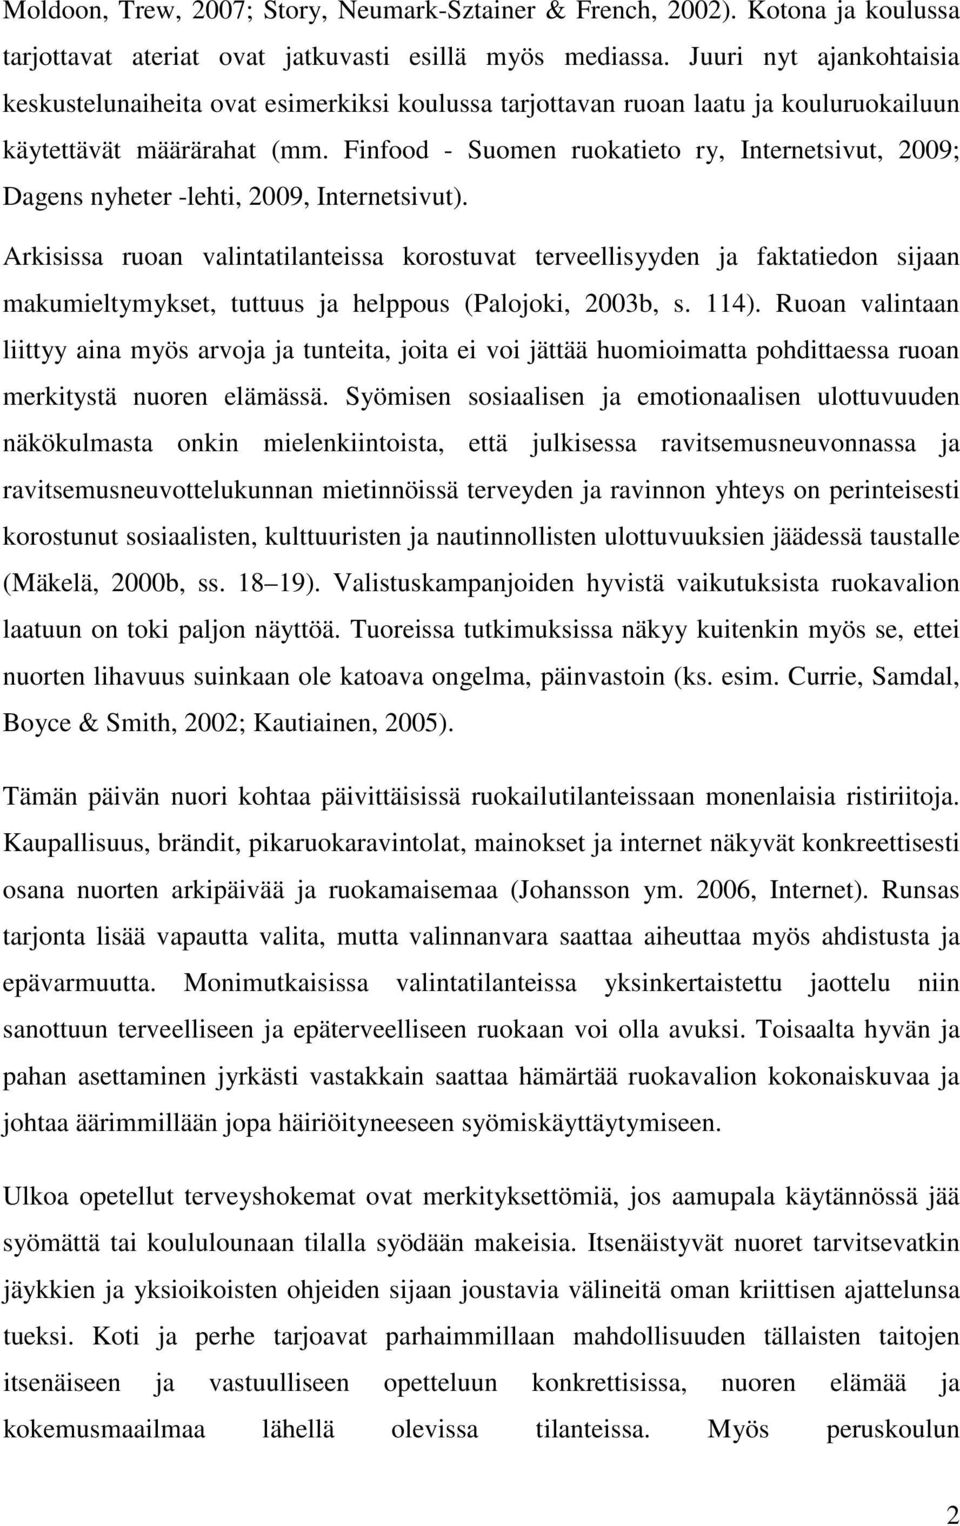 Finfood - Suomen ruokatieto ry, Internetsivut, 2009; Dagens nyheter -lehti, 2009, Internetsivut).